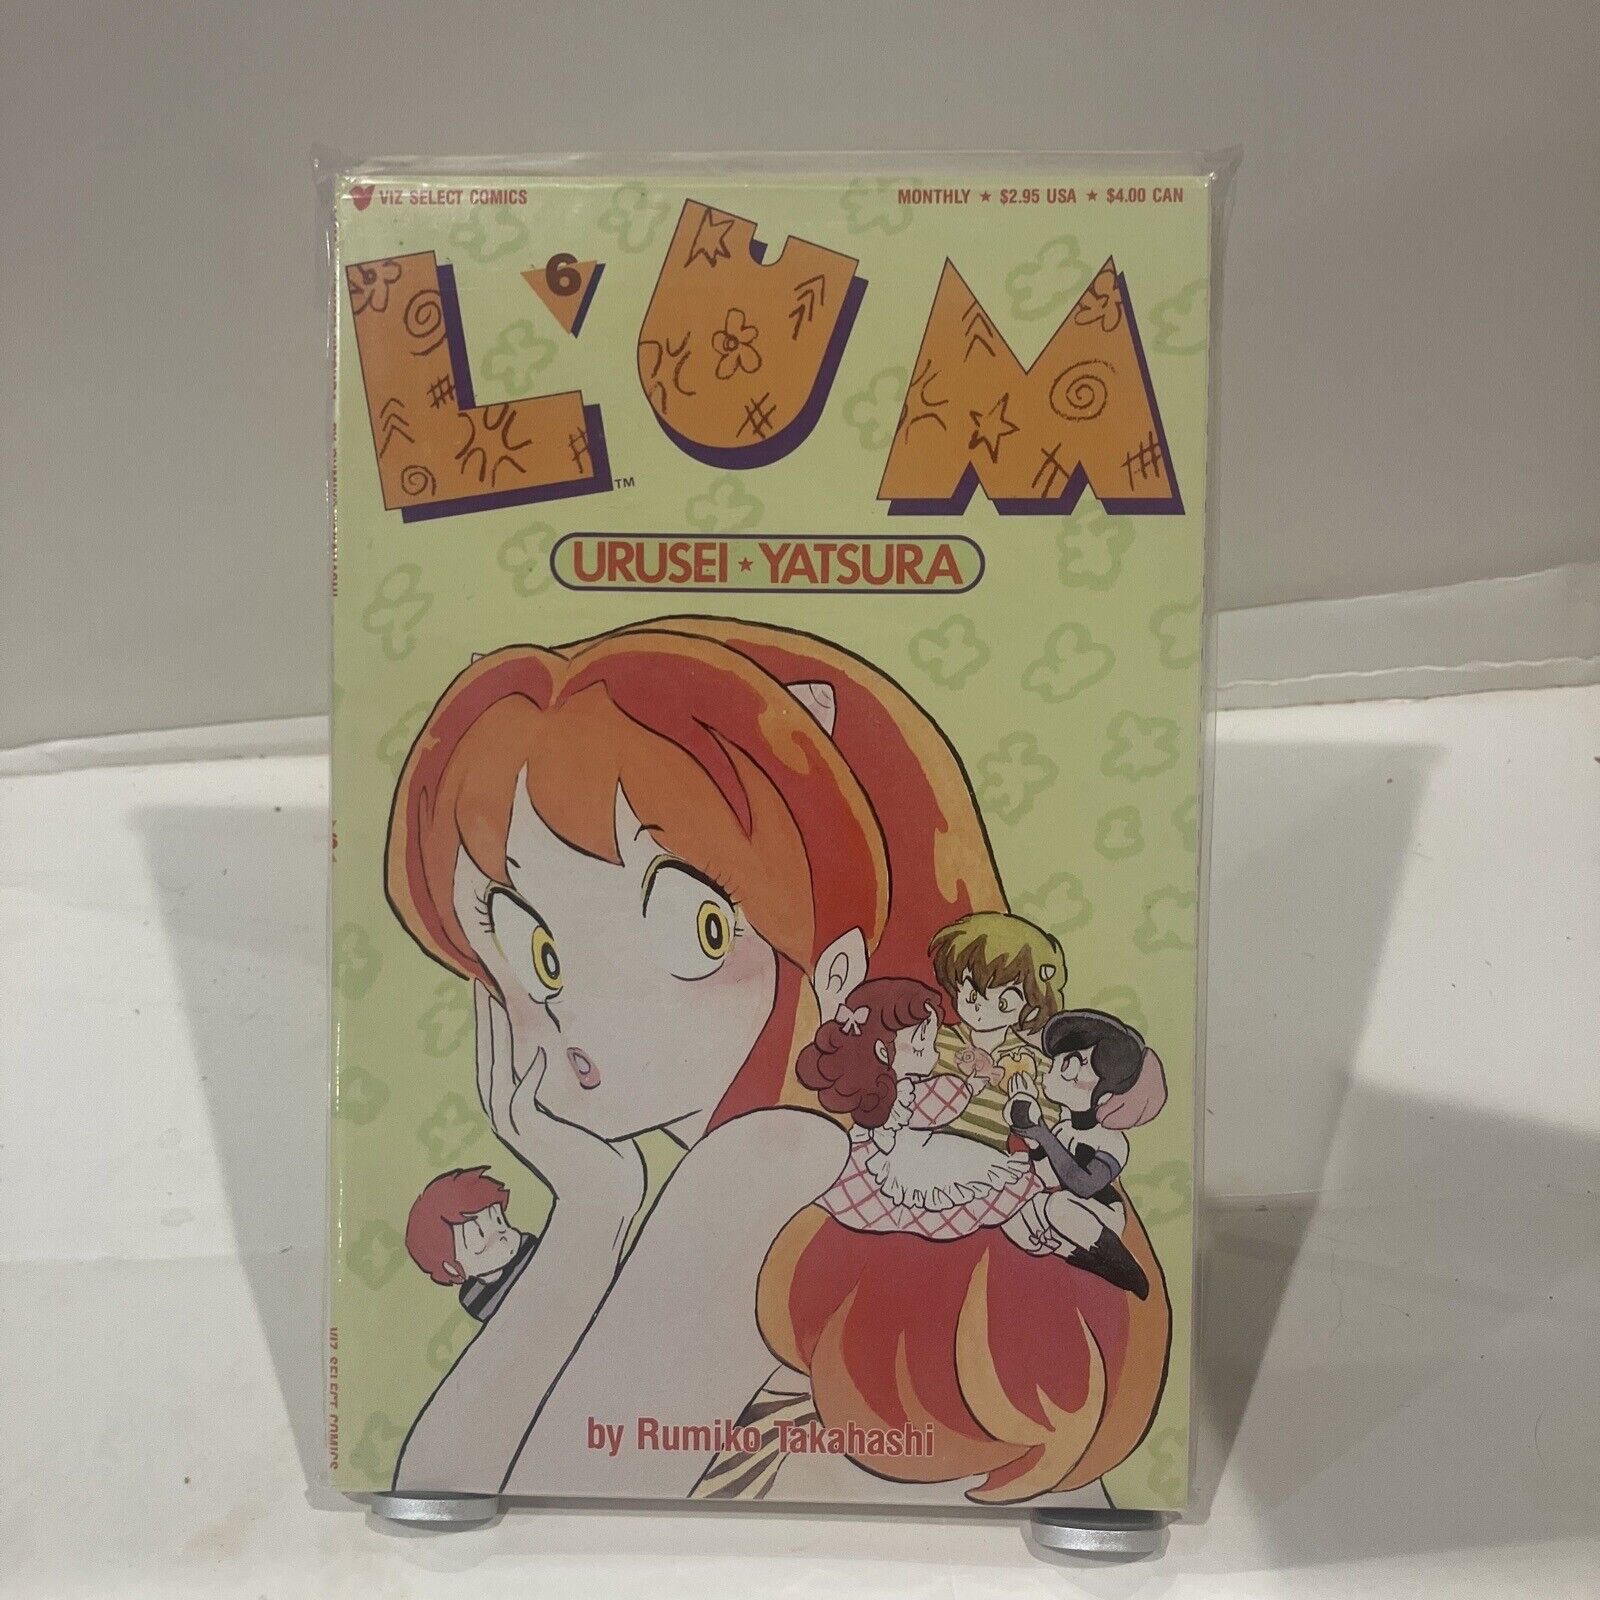 Lum #6, Urusei Yatsura, Rumiko Takahashi, Viz Select Comics 1989